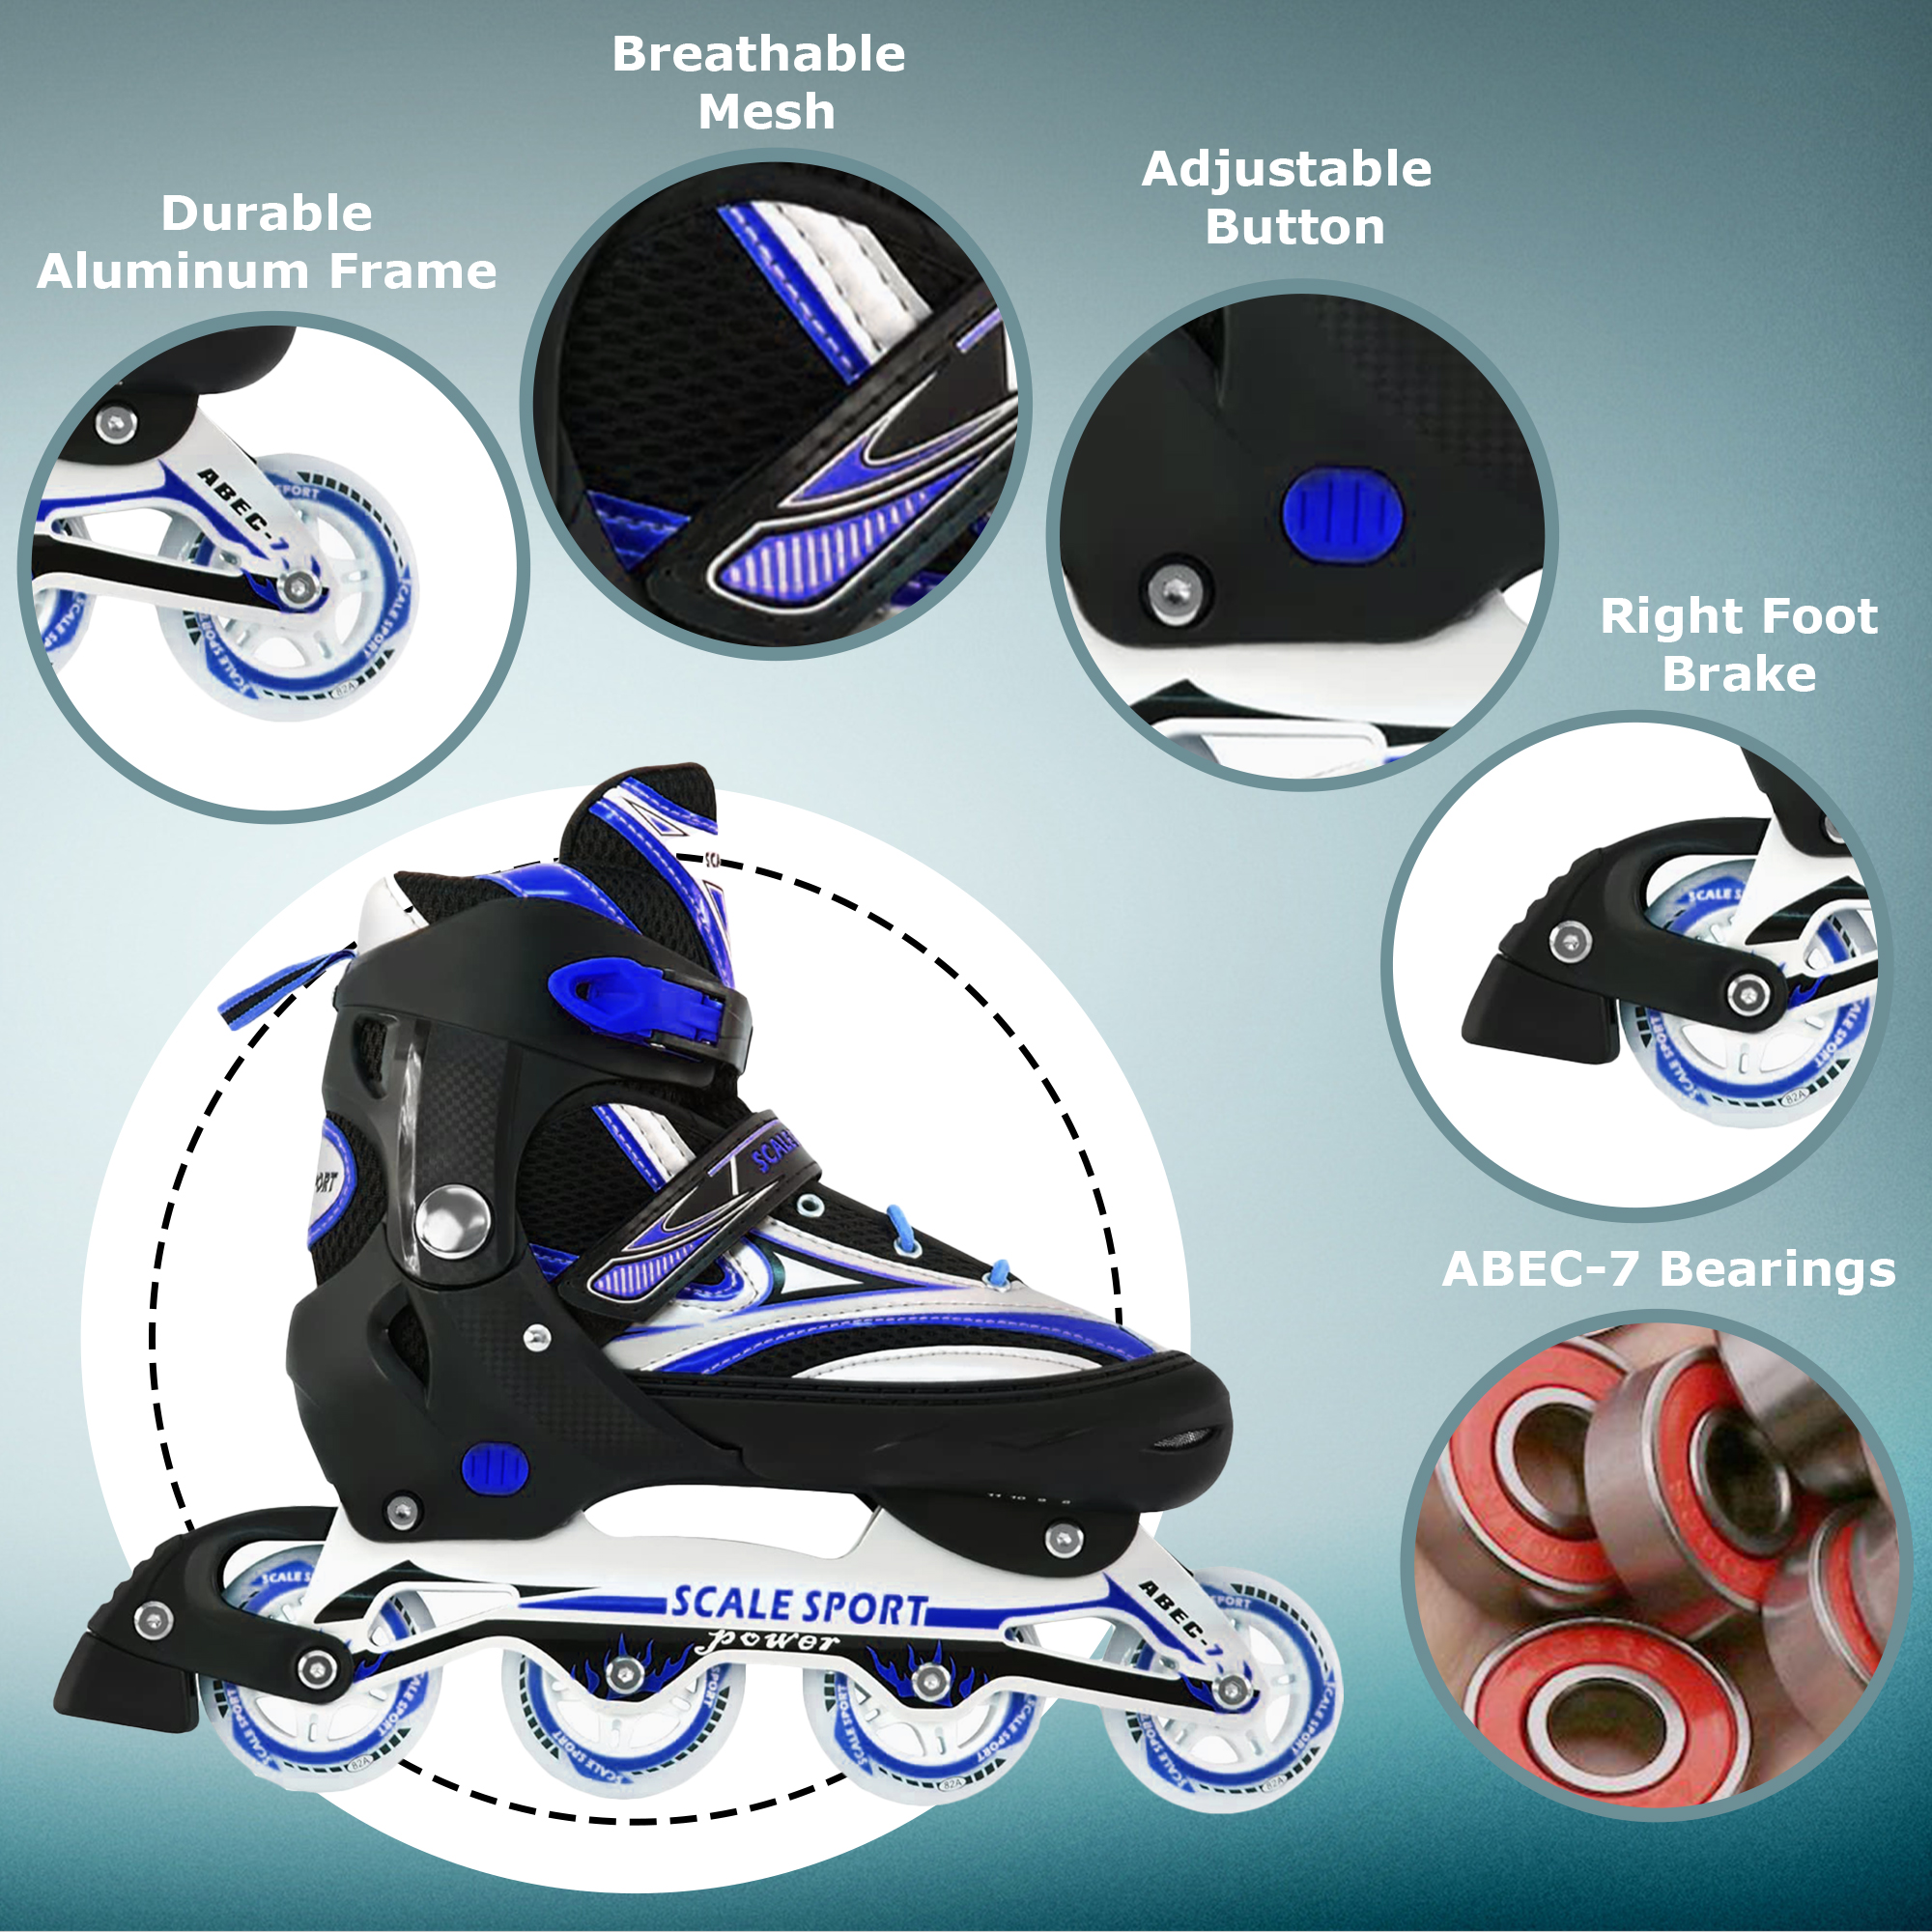 Size 8-11 Adjustable Inline Skates for Adult Men Ladies Teens Blue - image 3 of 11